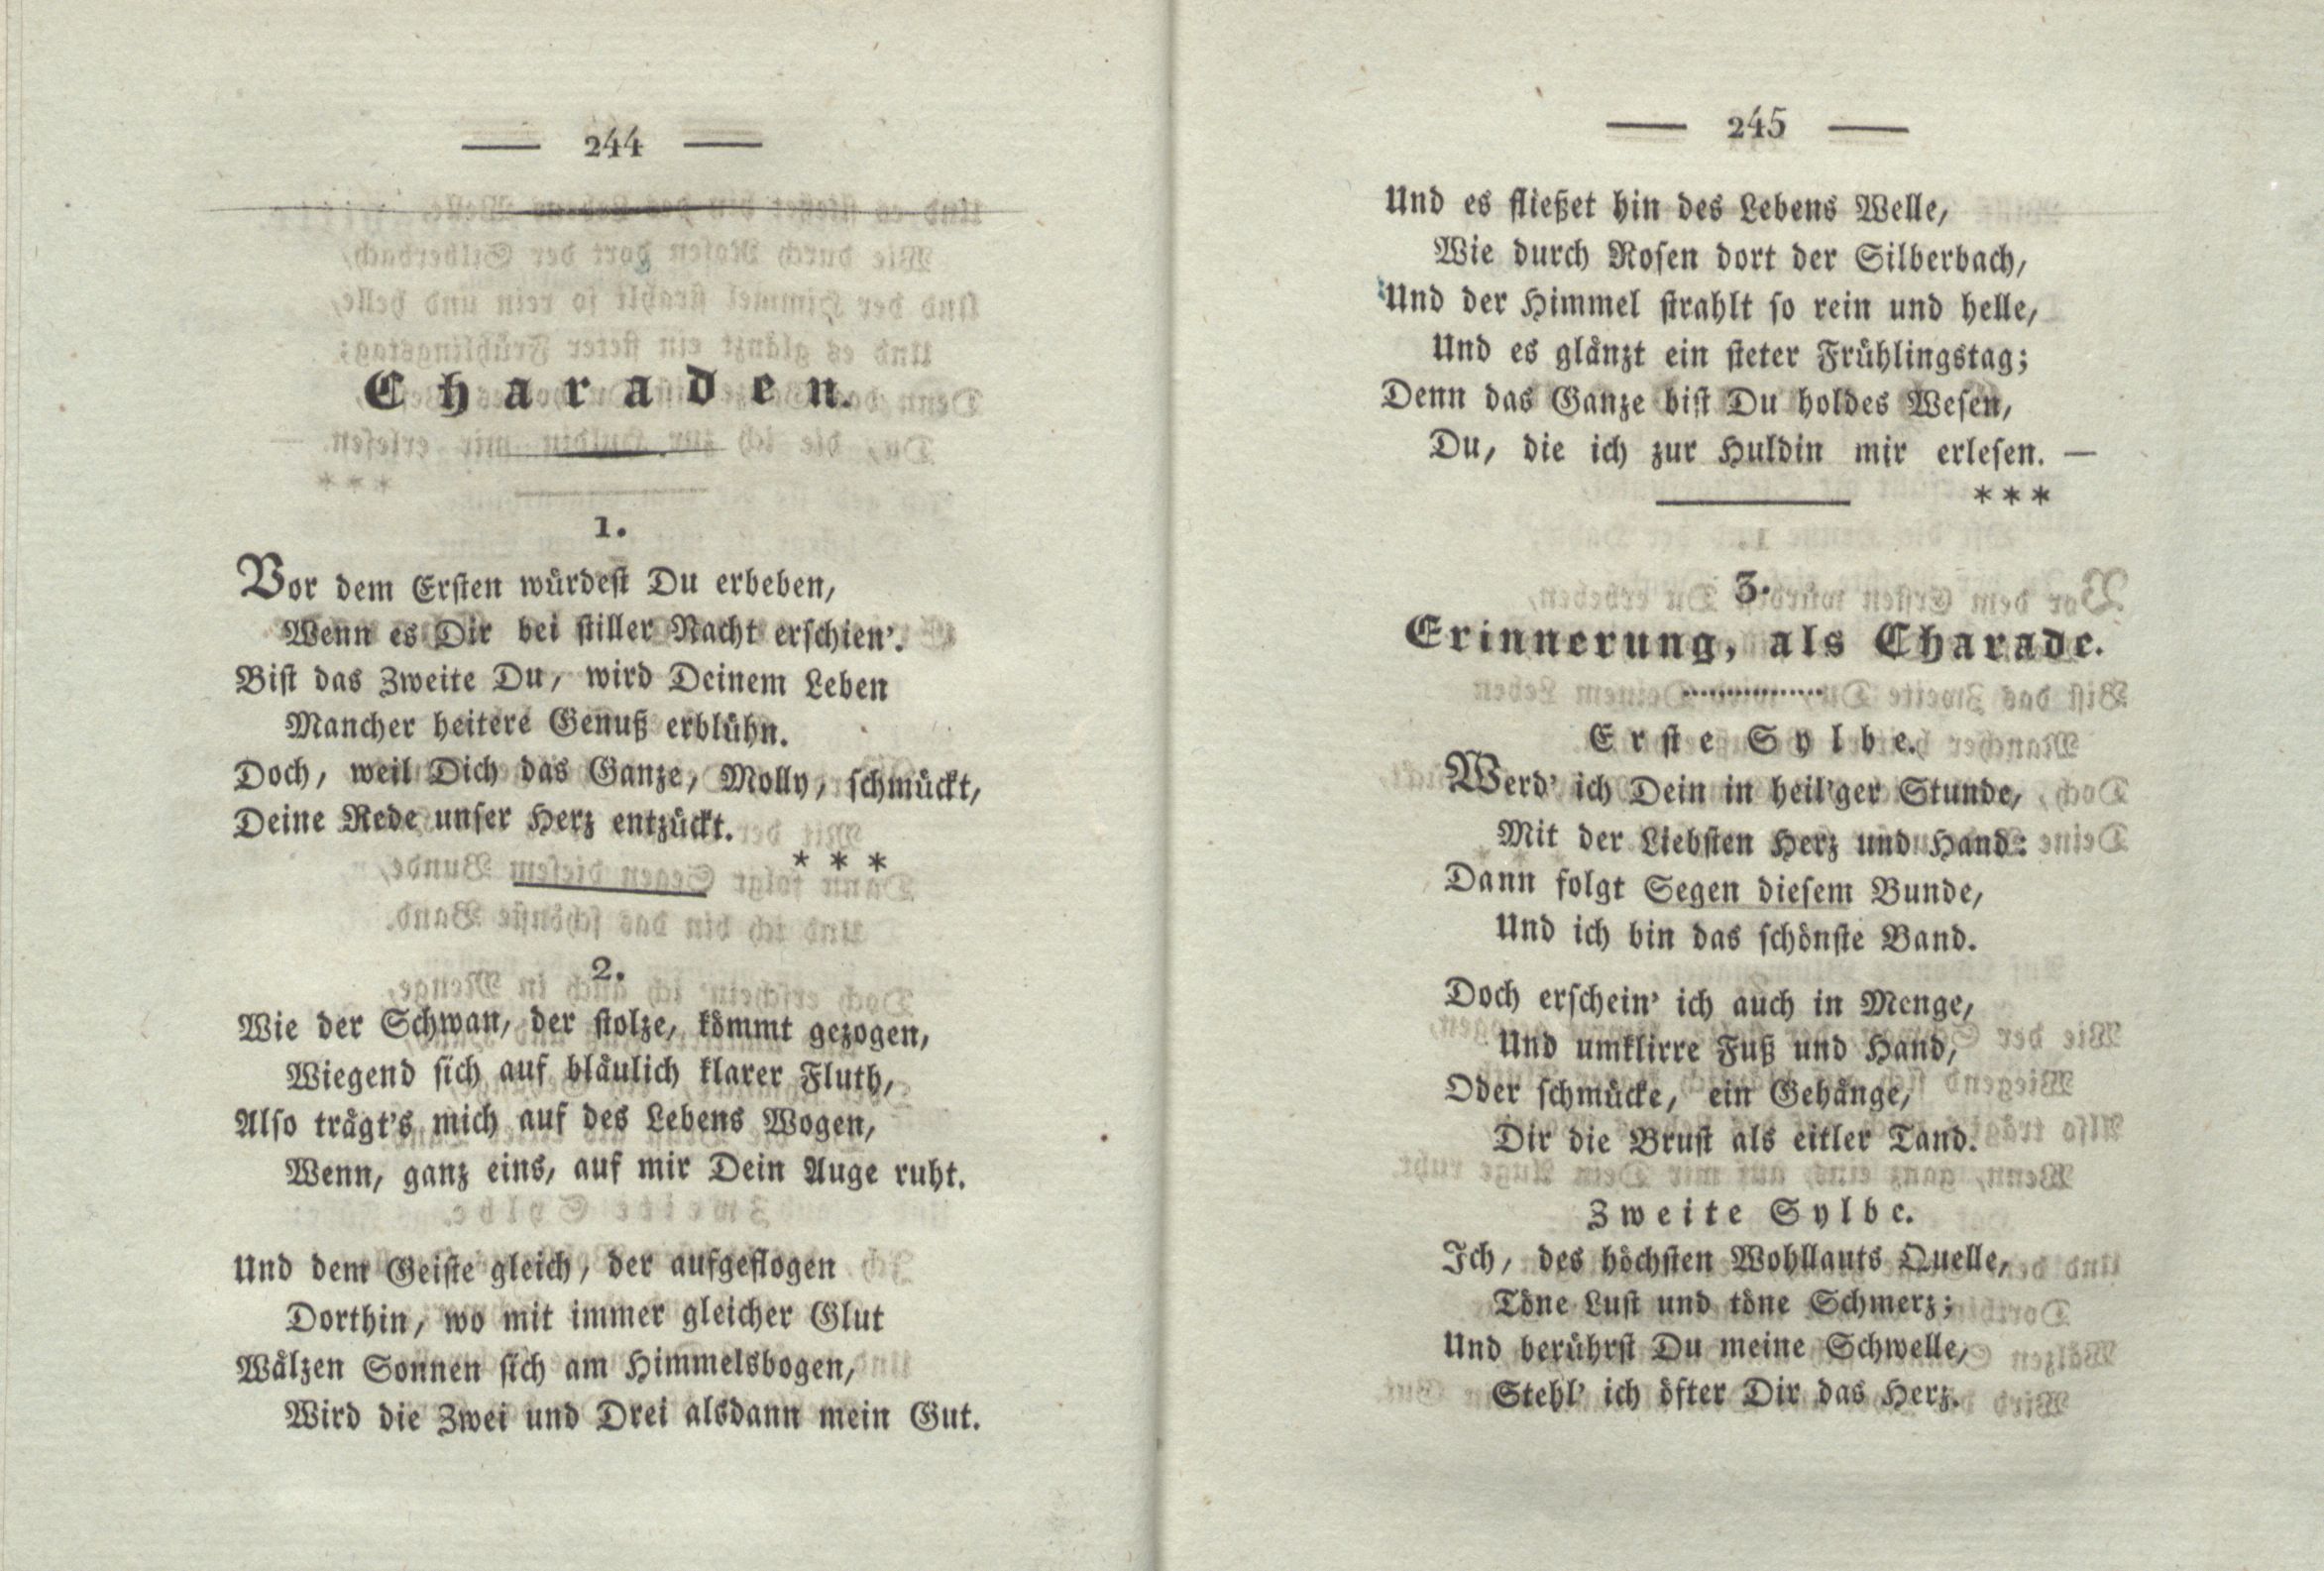 Erinnerung, als Charade (1825) | 1. (244-245) Põhitekst